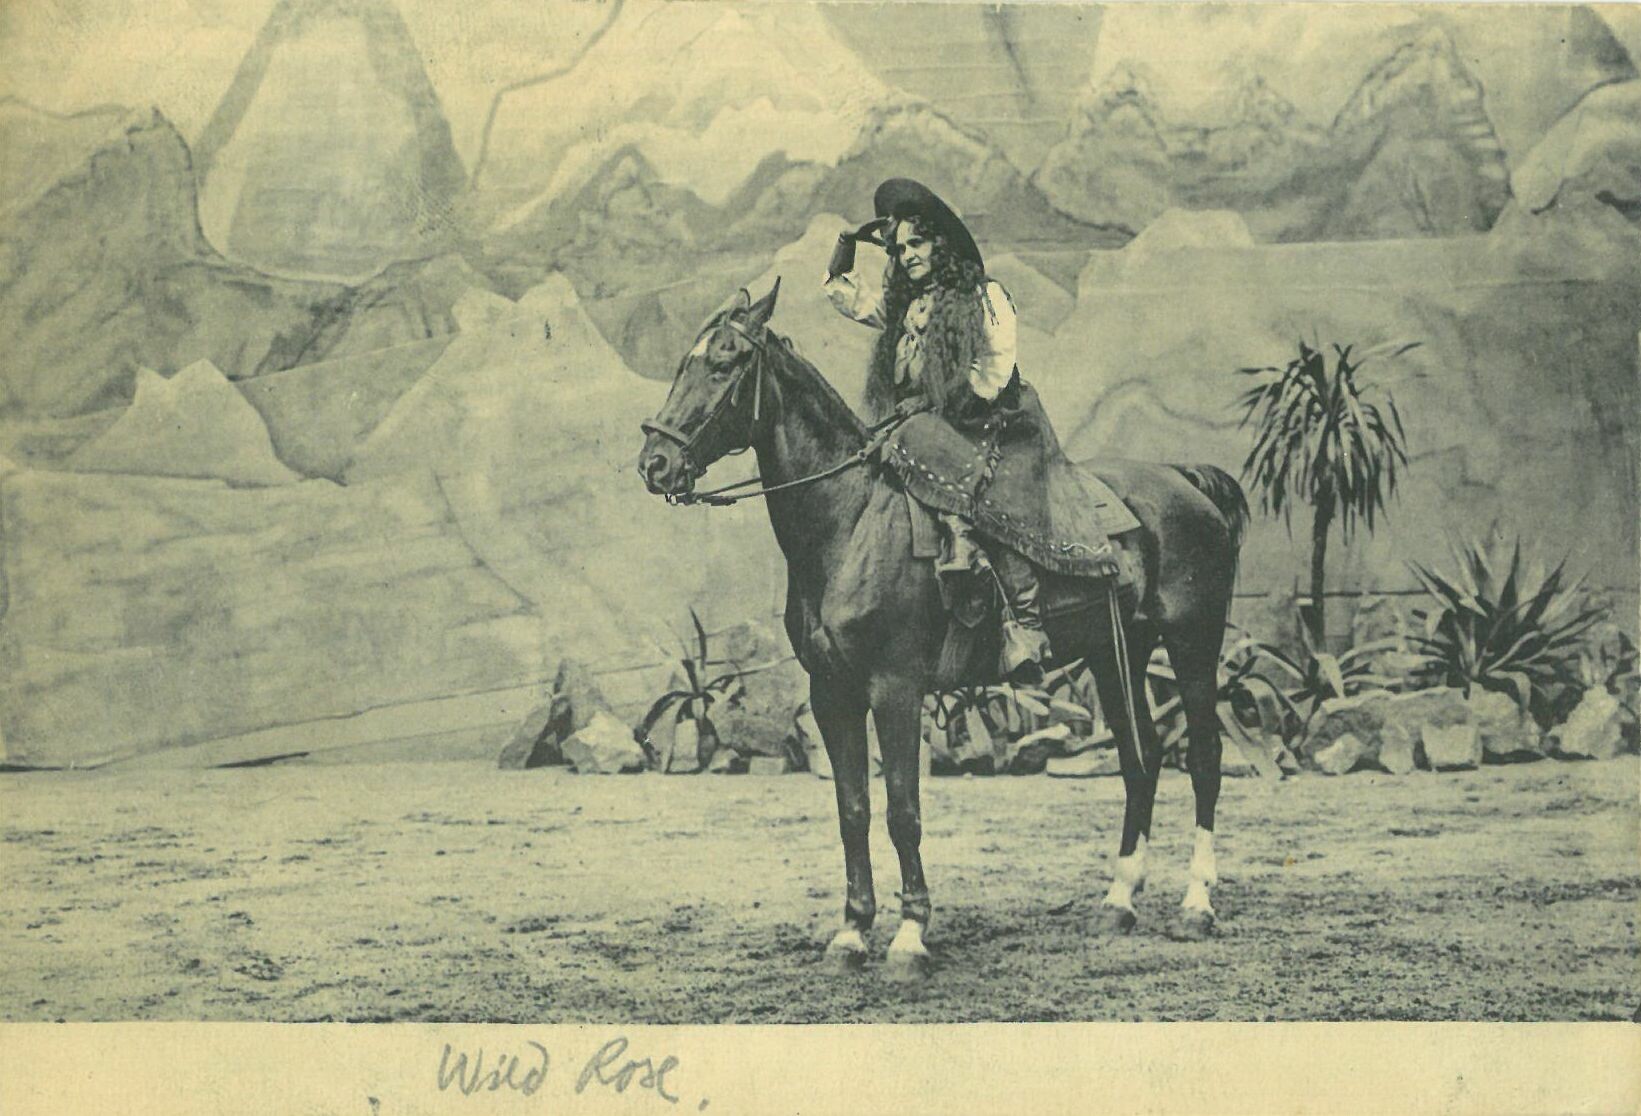 Wild West Show der Deer Family; Wild Rose auf Pferd (Karl-May-Museum gGmbH RR-R)